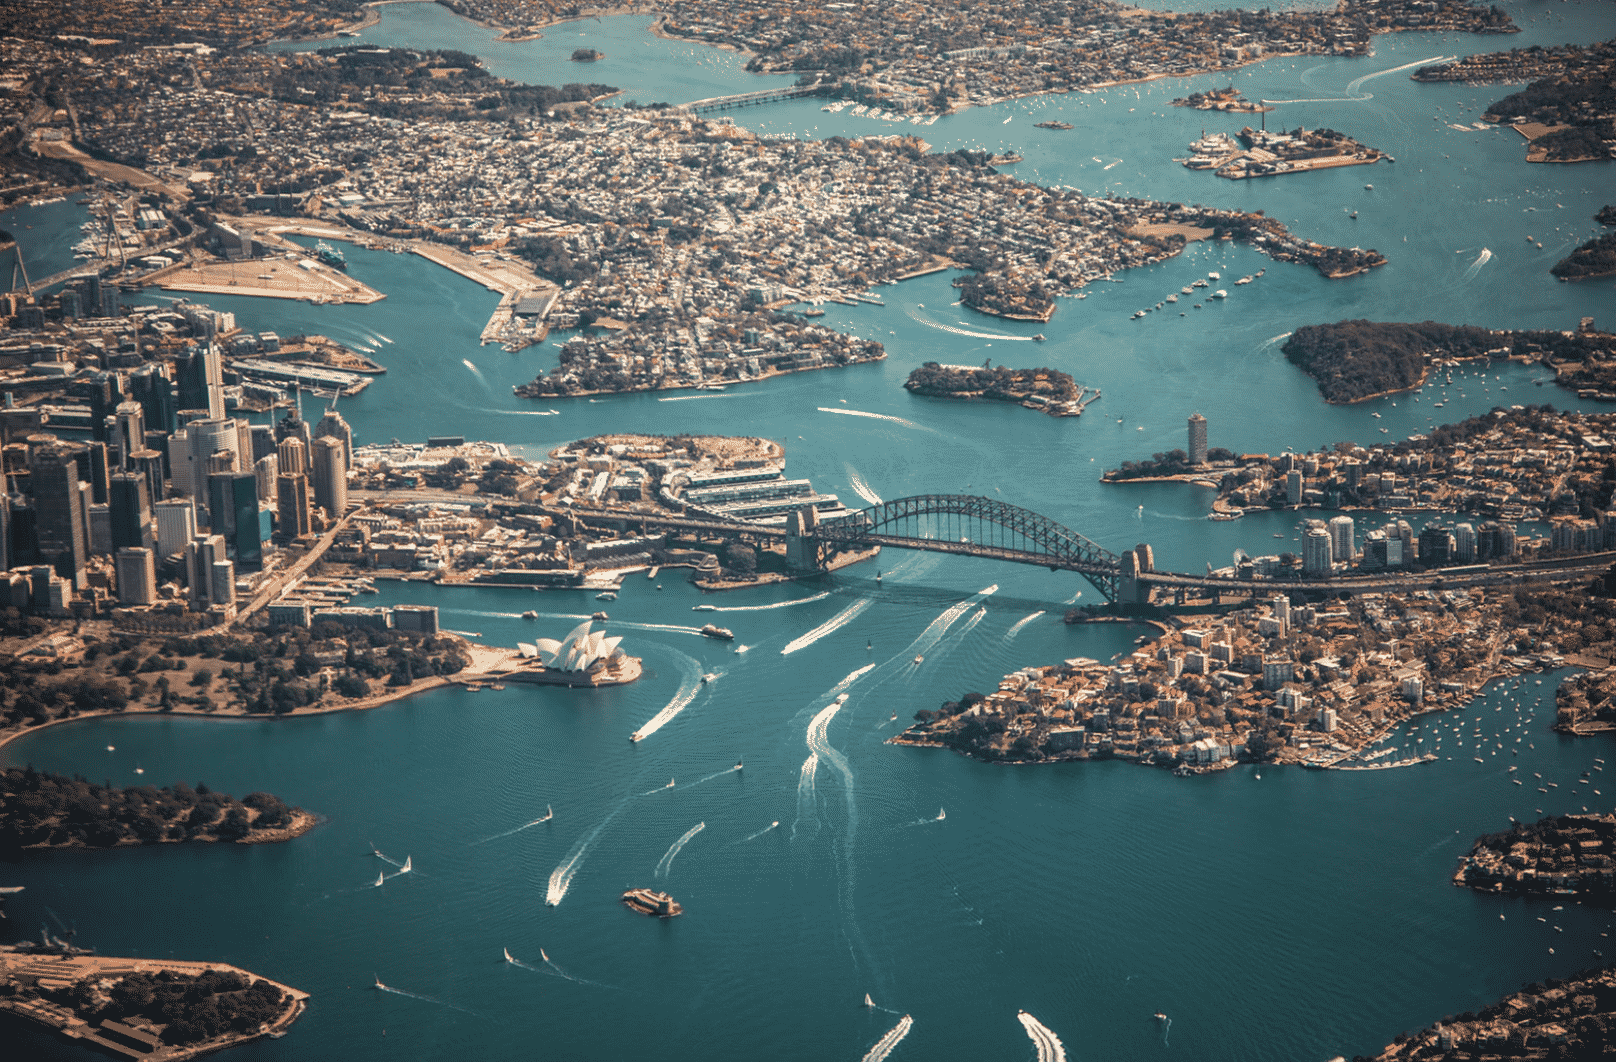 Khảo sát cho thấy người Sydney rất sẵn lòng giúp đỡ những khách du lịch bị lạc đường (Ảnh: Big 7 Travel )